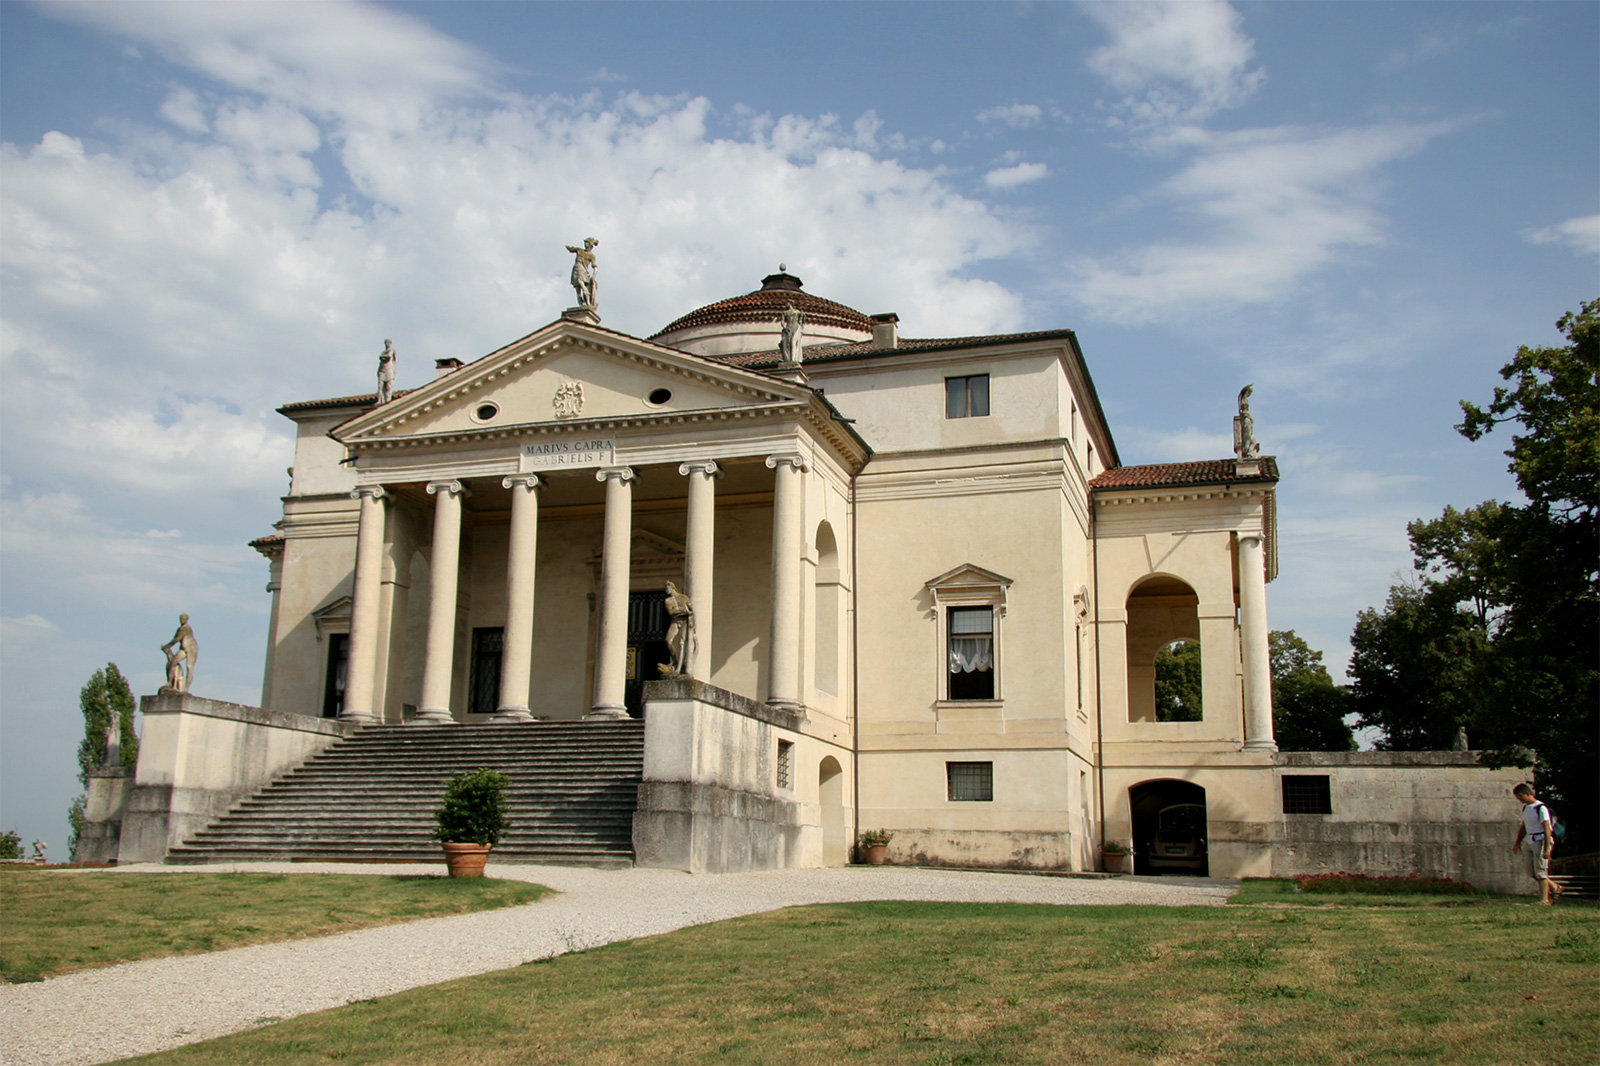 Villa Capra by Andrea Palladio